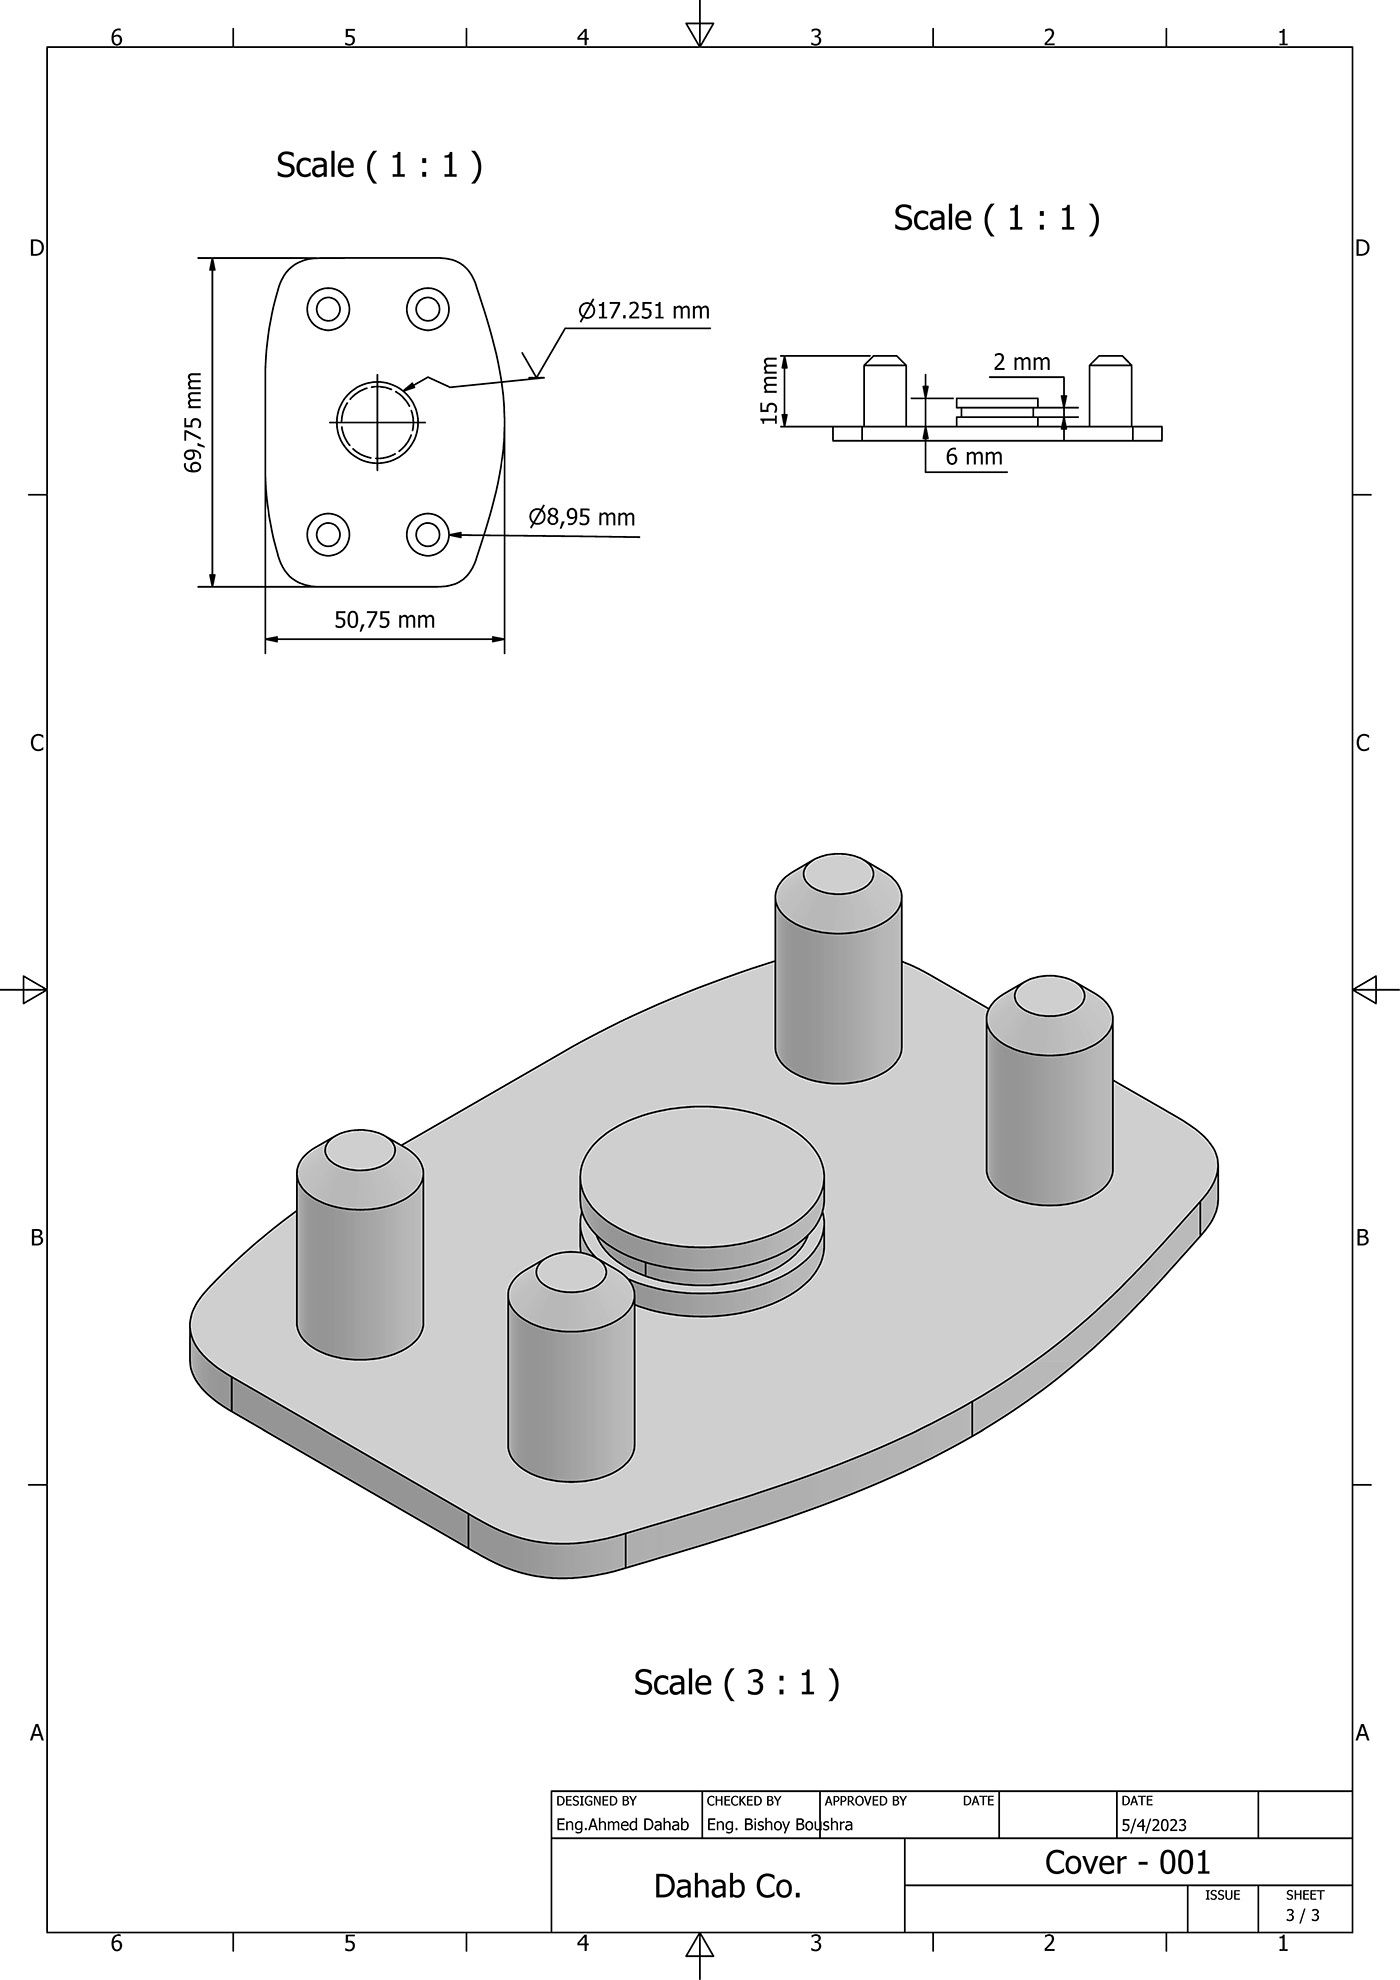 3d modeling 3dmodeling AutodeskInventor inventor Mechanic mechanical Mechanical Design mechanical engineering